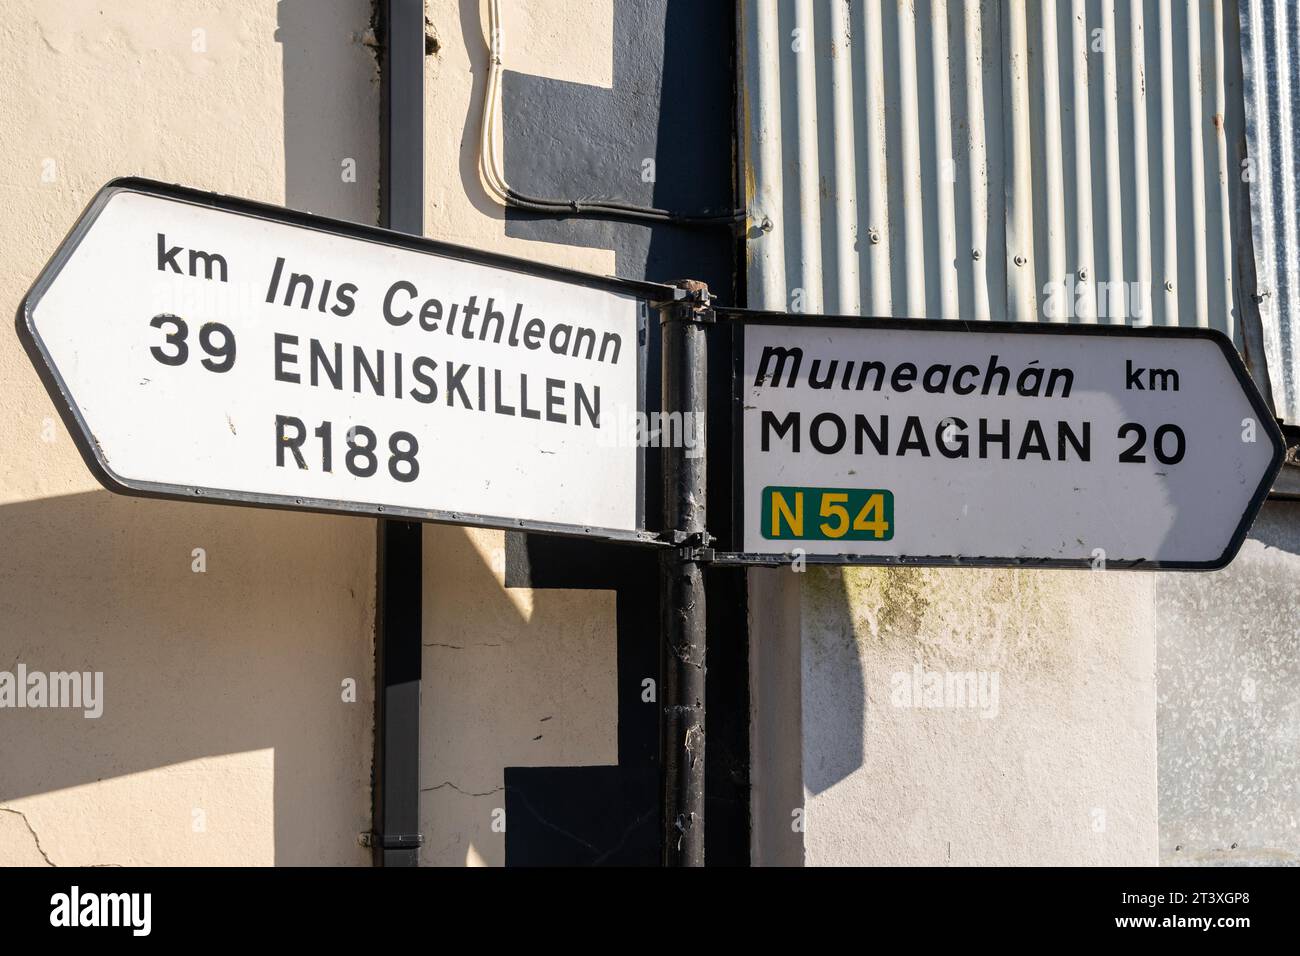 Panneau indiquant Enniskillen et Monaghan à clones, Co. Monaghan, Irlande. Banque D'Images